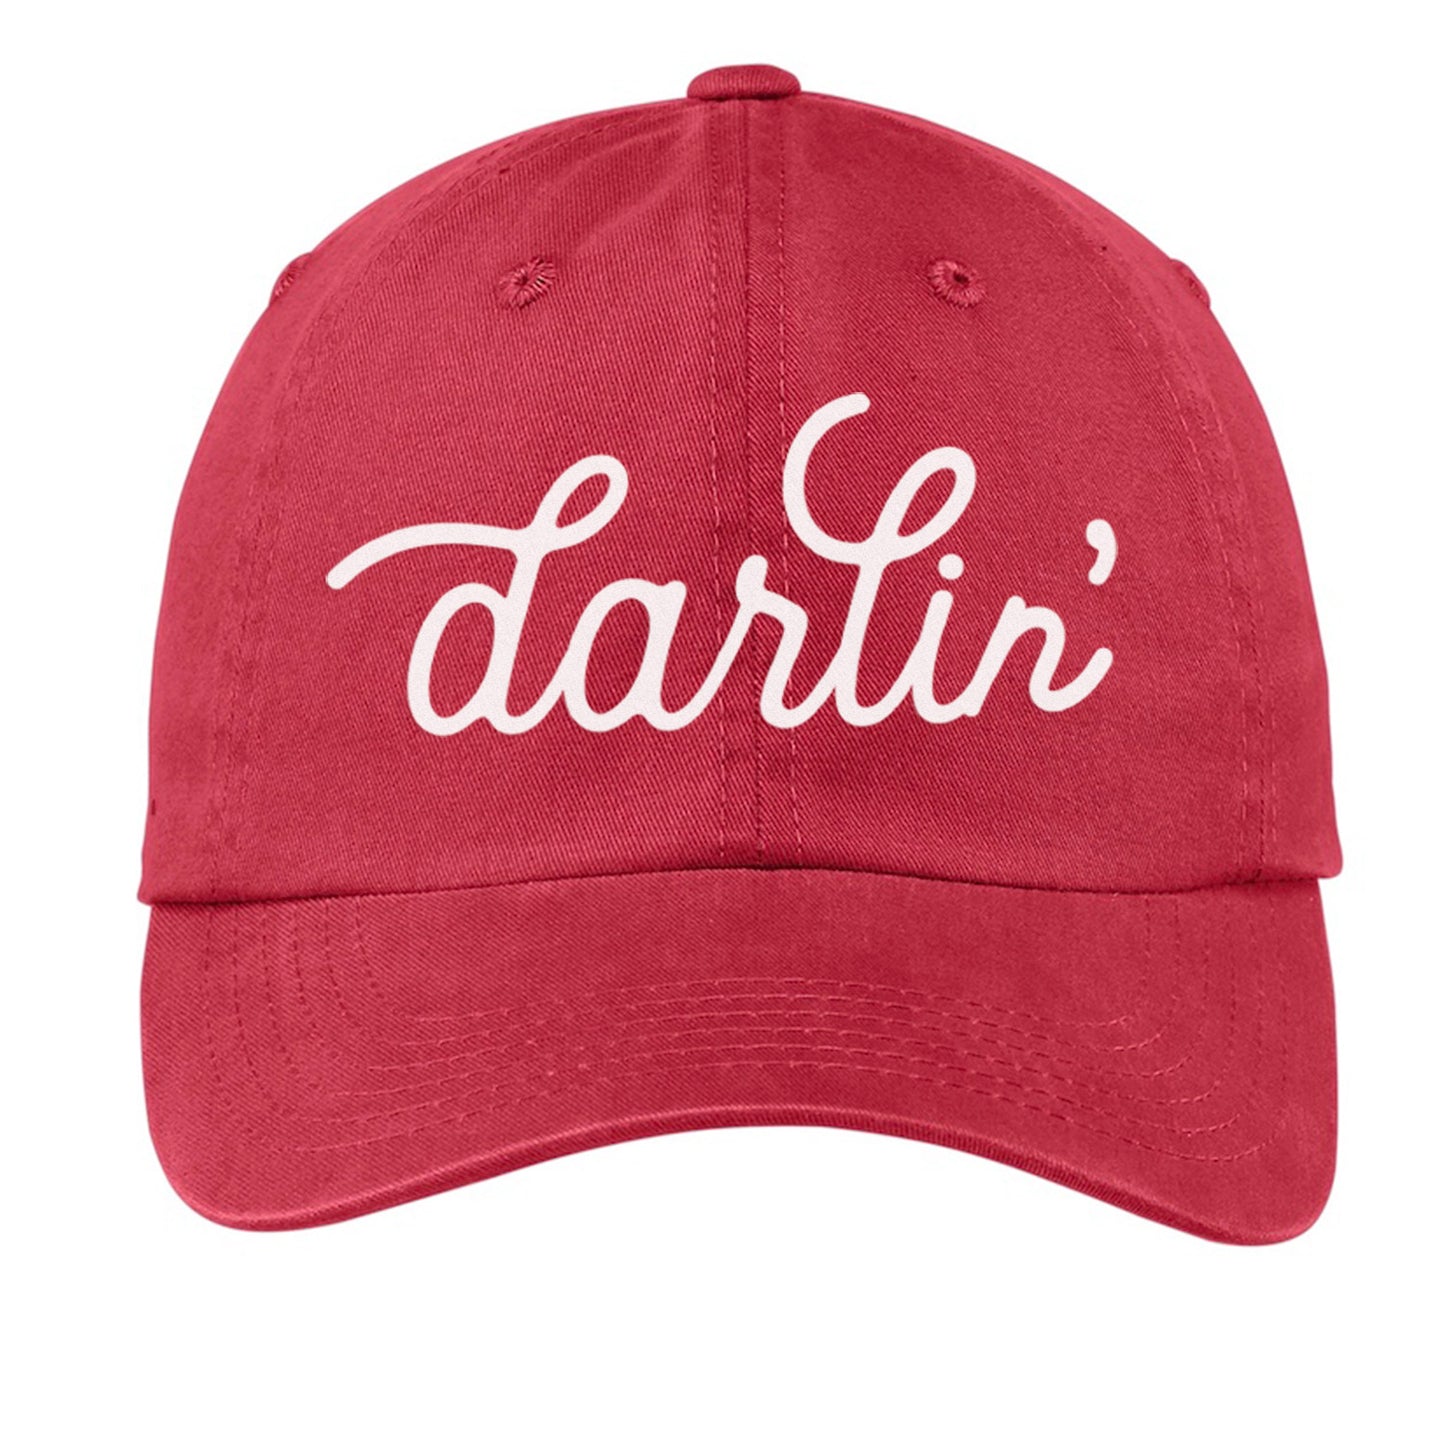 Darlin' Cursive Baseball Cap